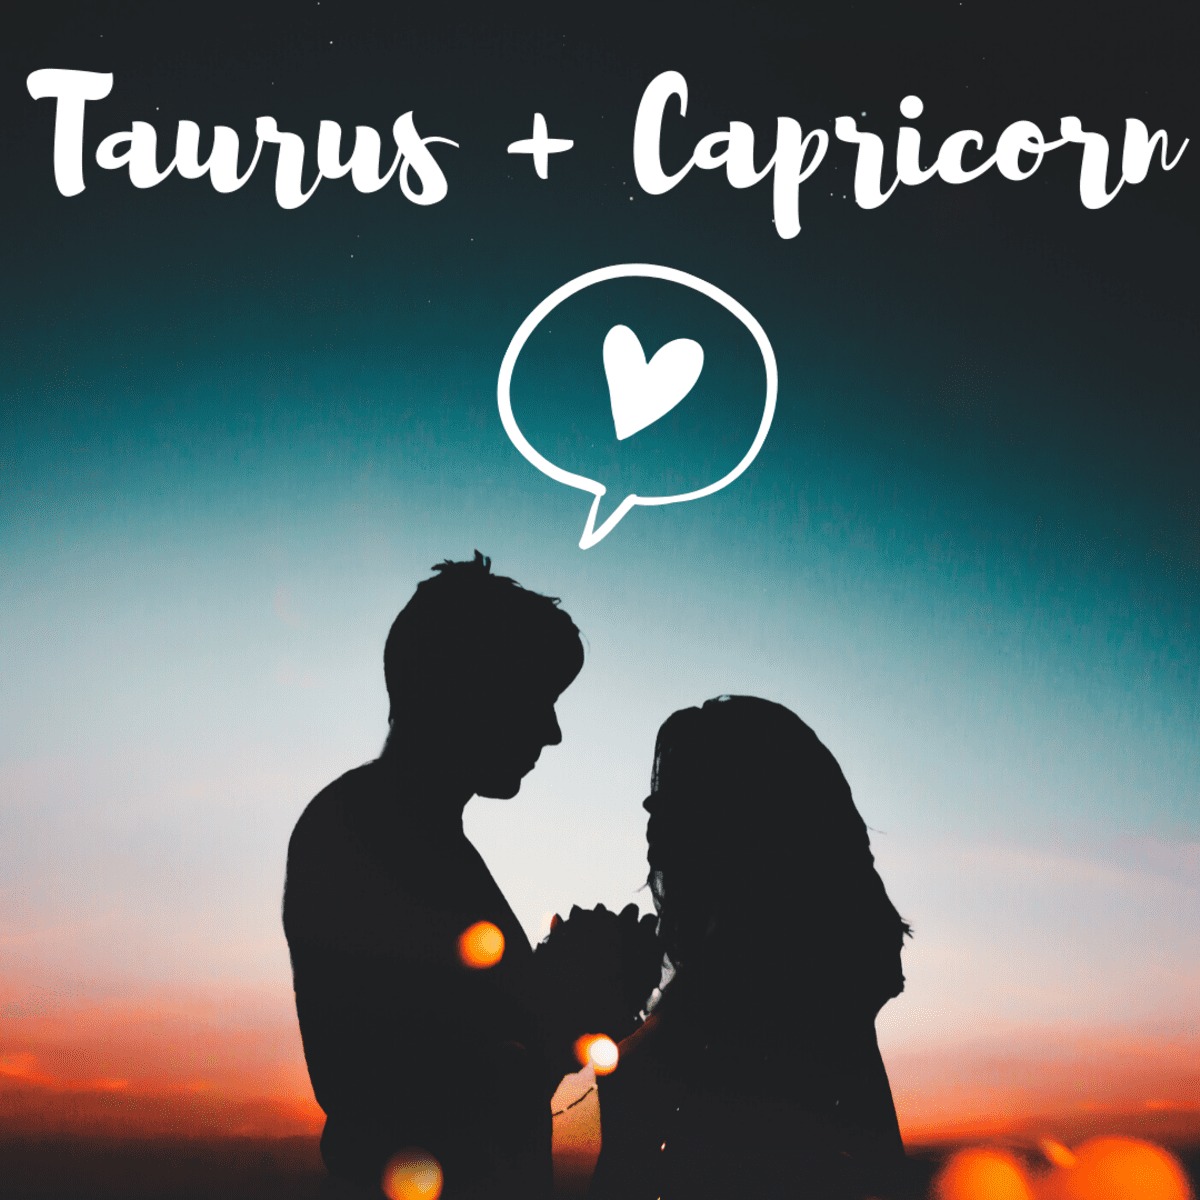 capricorn in love